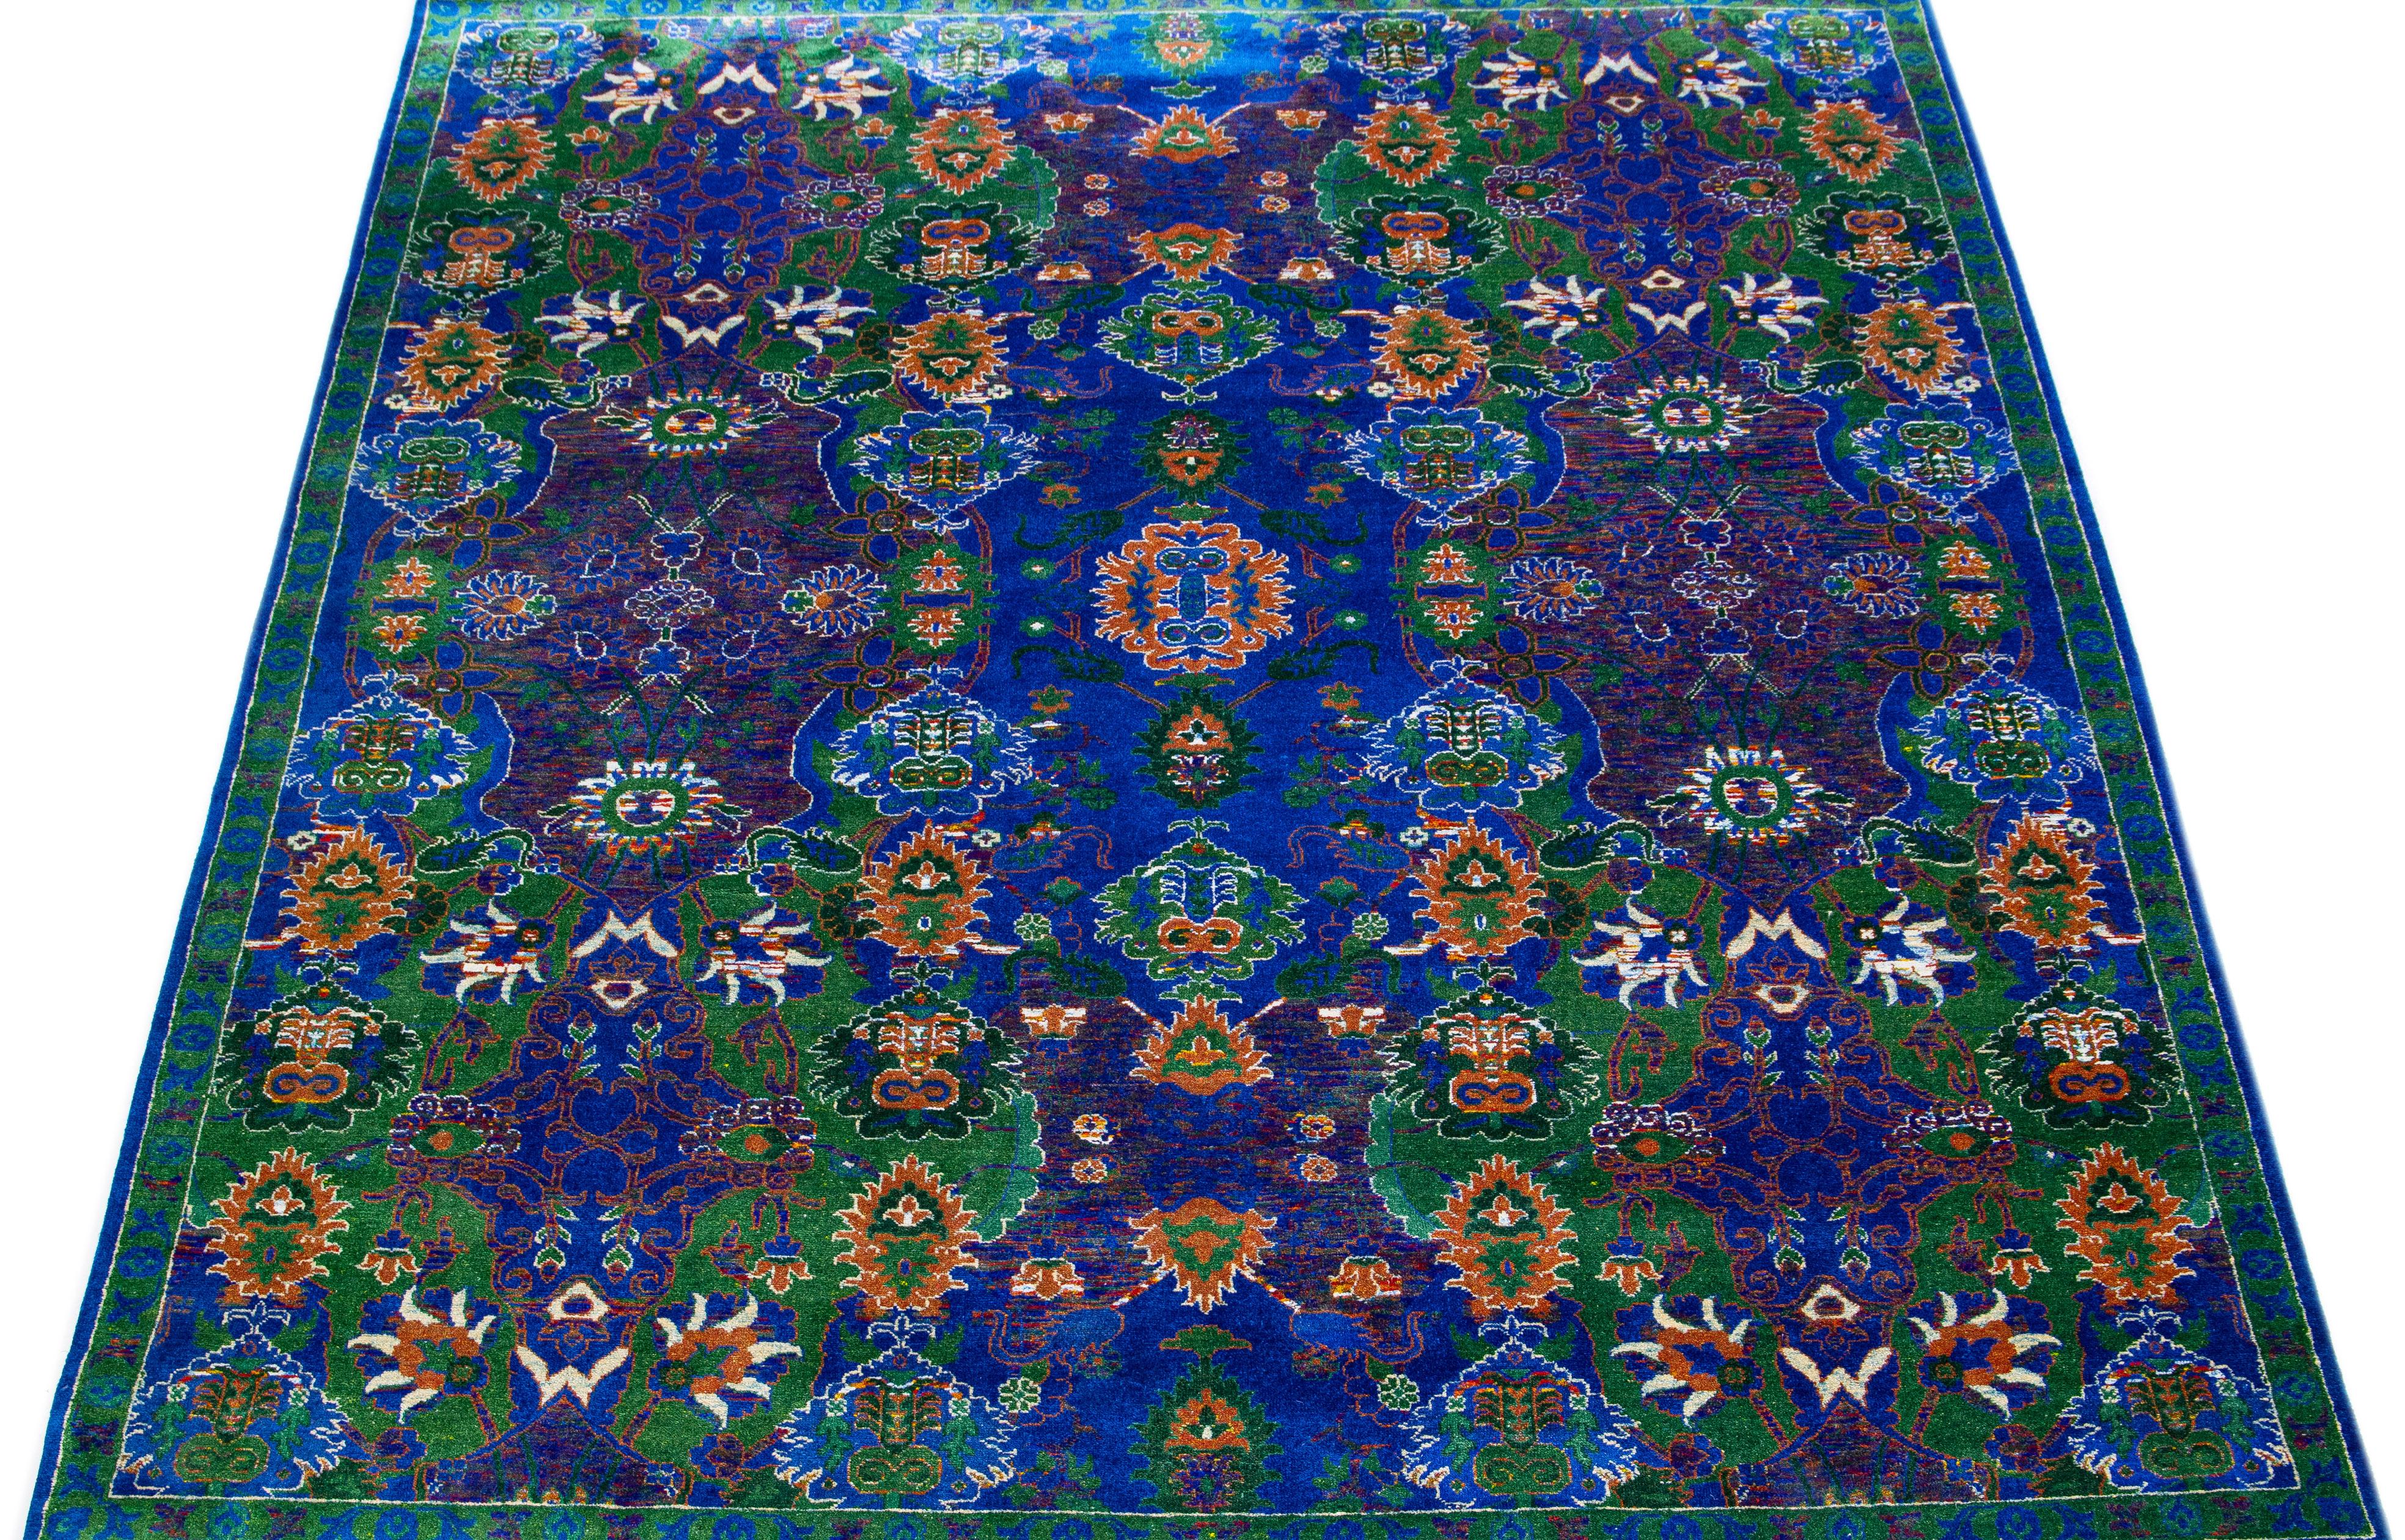 Ce tapis tissé luxueusement sophistiqué mêle la laine et la soie indiennes. Il présente une toile de fond bleue ornée d'un élégant motif floral qui affiche des éclats de vert et d'orange pour une explosion de couleurs vives.

Ce tapis mesure 8' x